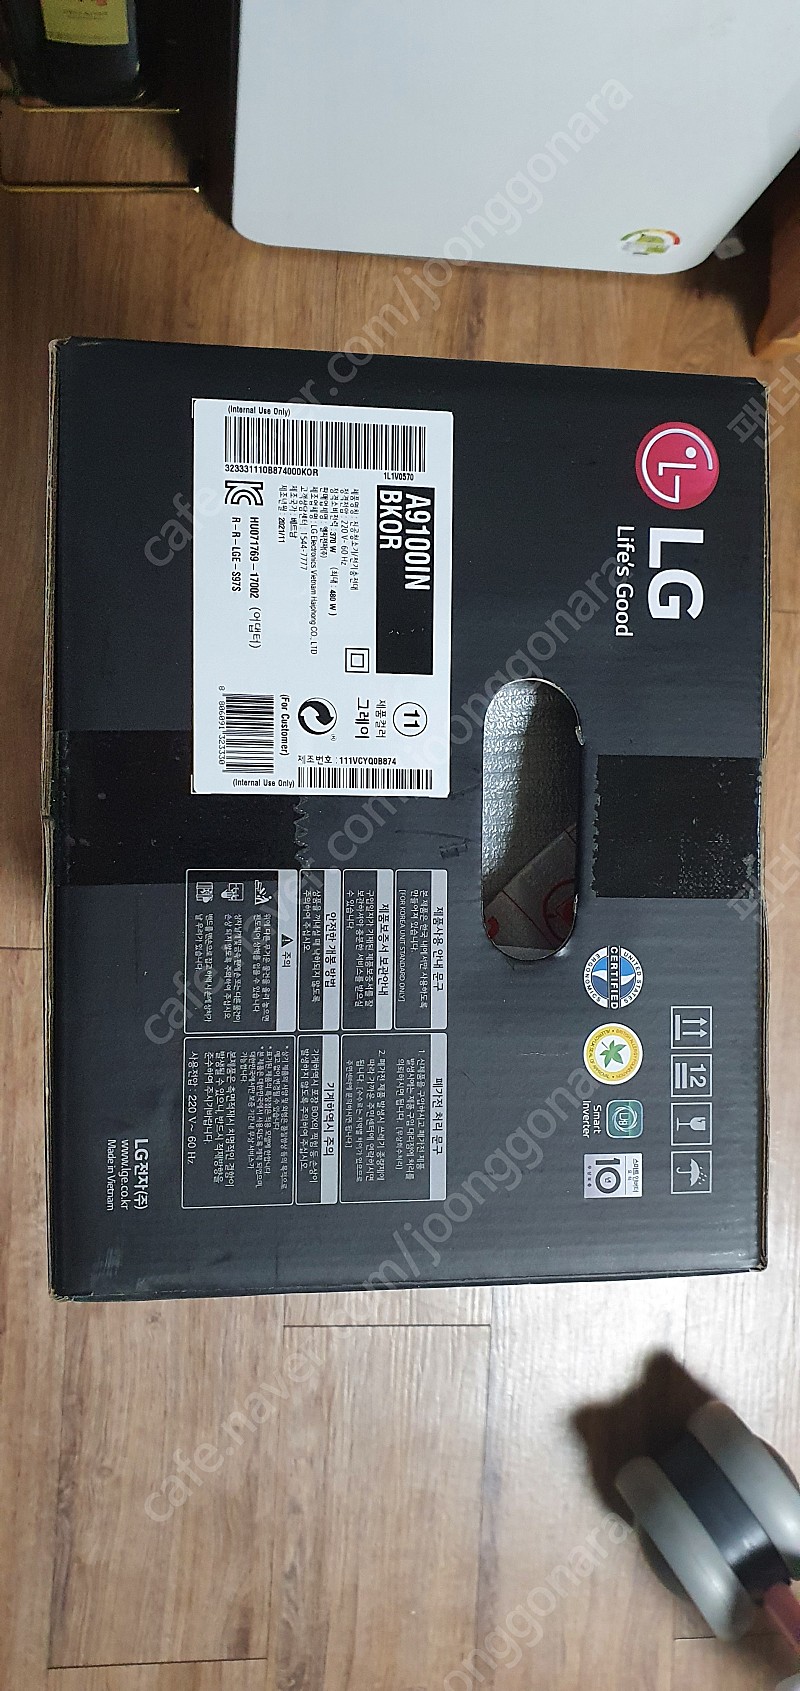 LG A9100IN 청소기 / 21년 11월 생산 / 미개봉 판매합니다!